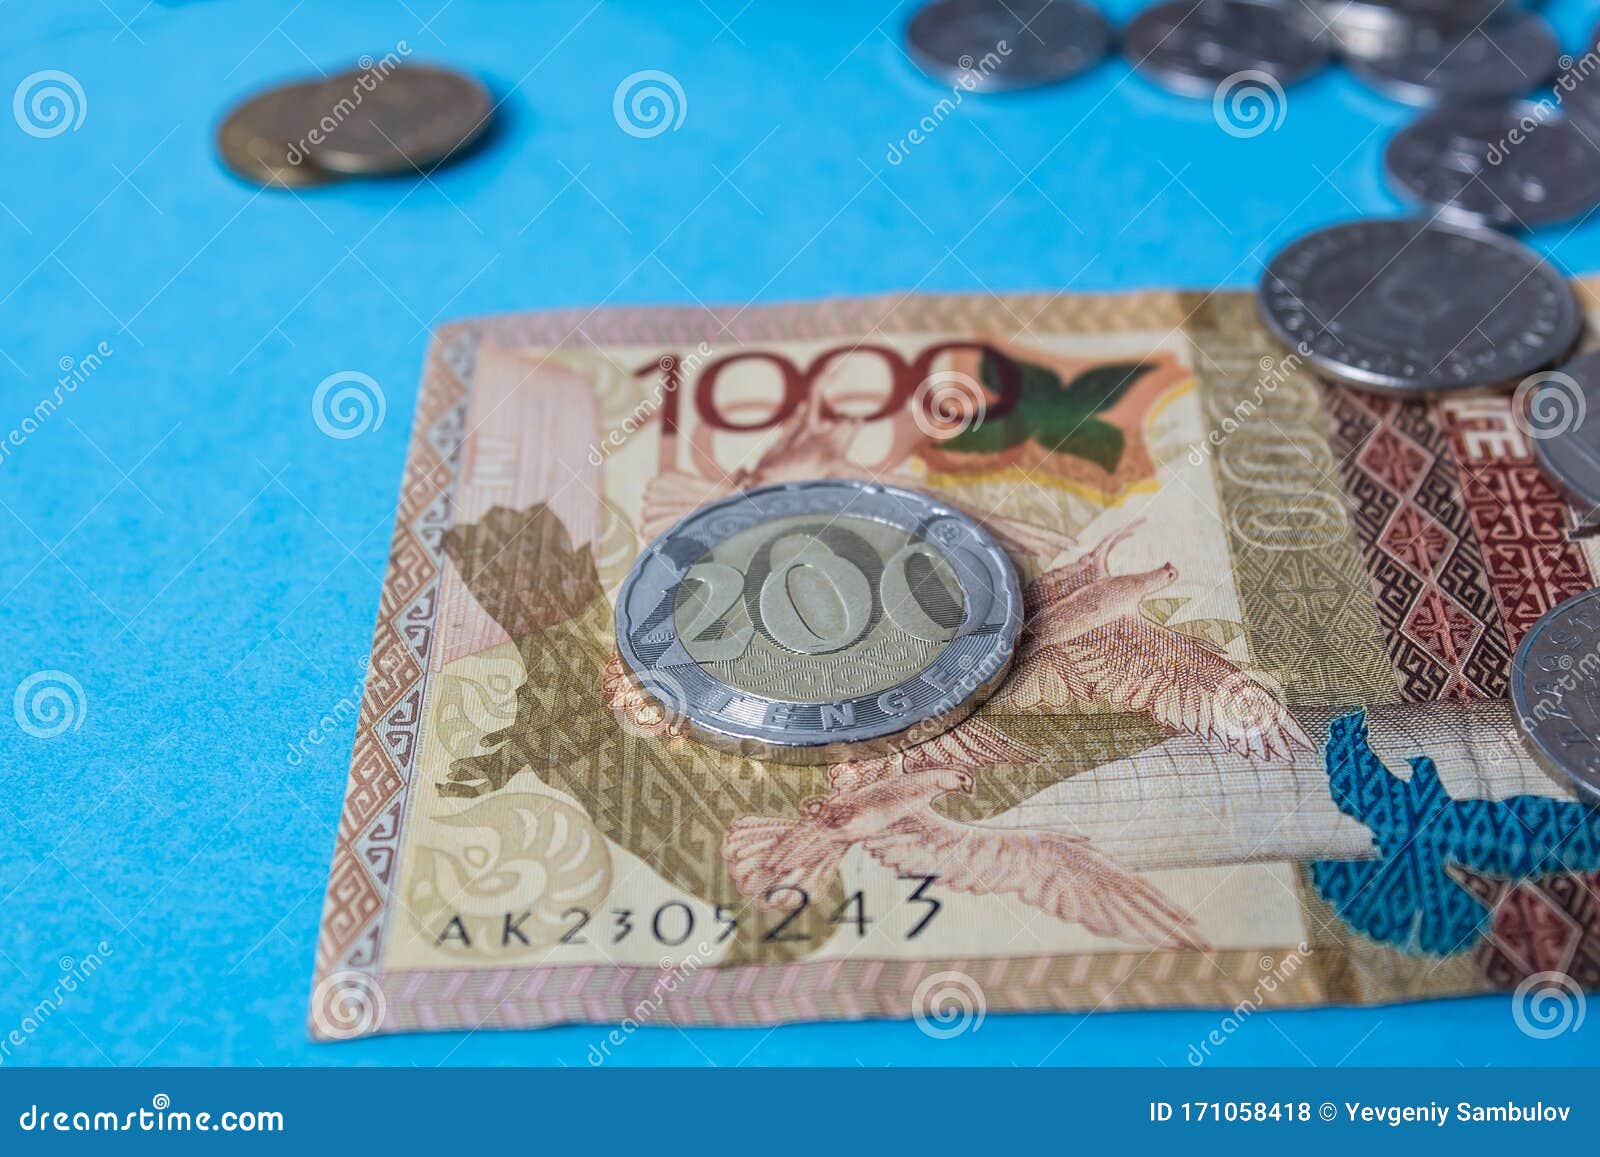 167 долларов в рублях. 200 Тенге. Казахские бумажные деньги. 200 Тенге в рублях. Фото монеты 200 тенге новые.